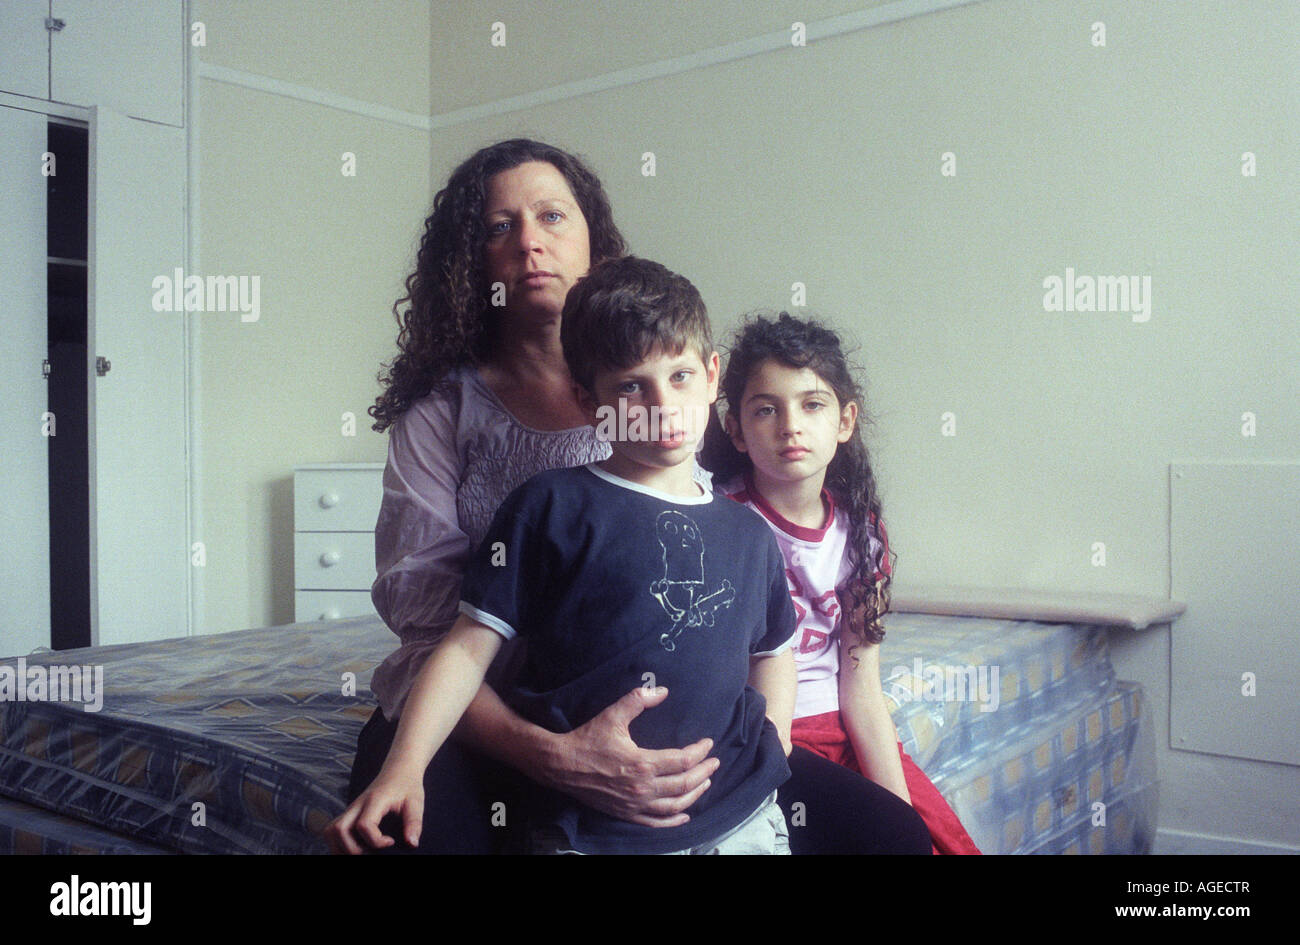 Eine schwangere alleinerziehende Mutter sitzt auf einem Bett mit ihren Kindern in ihr neues Zuhause, eine Wohnung in einer Sozialsiedlung. Mädchen im Alter von 9, jungen im Alter von 7. Stockfoto